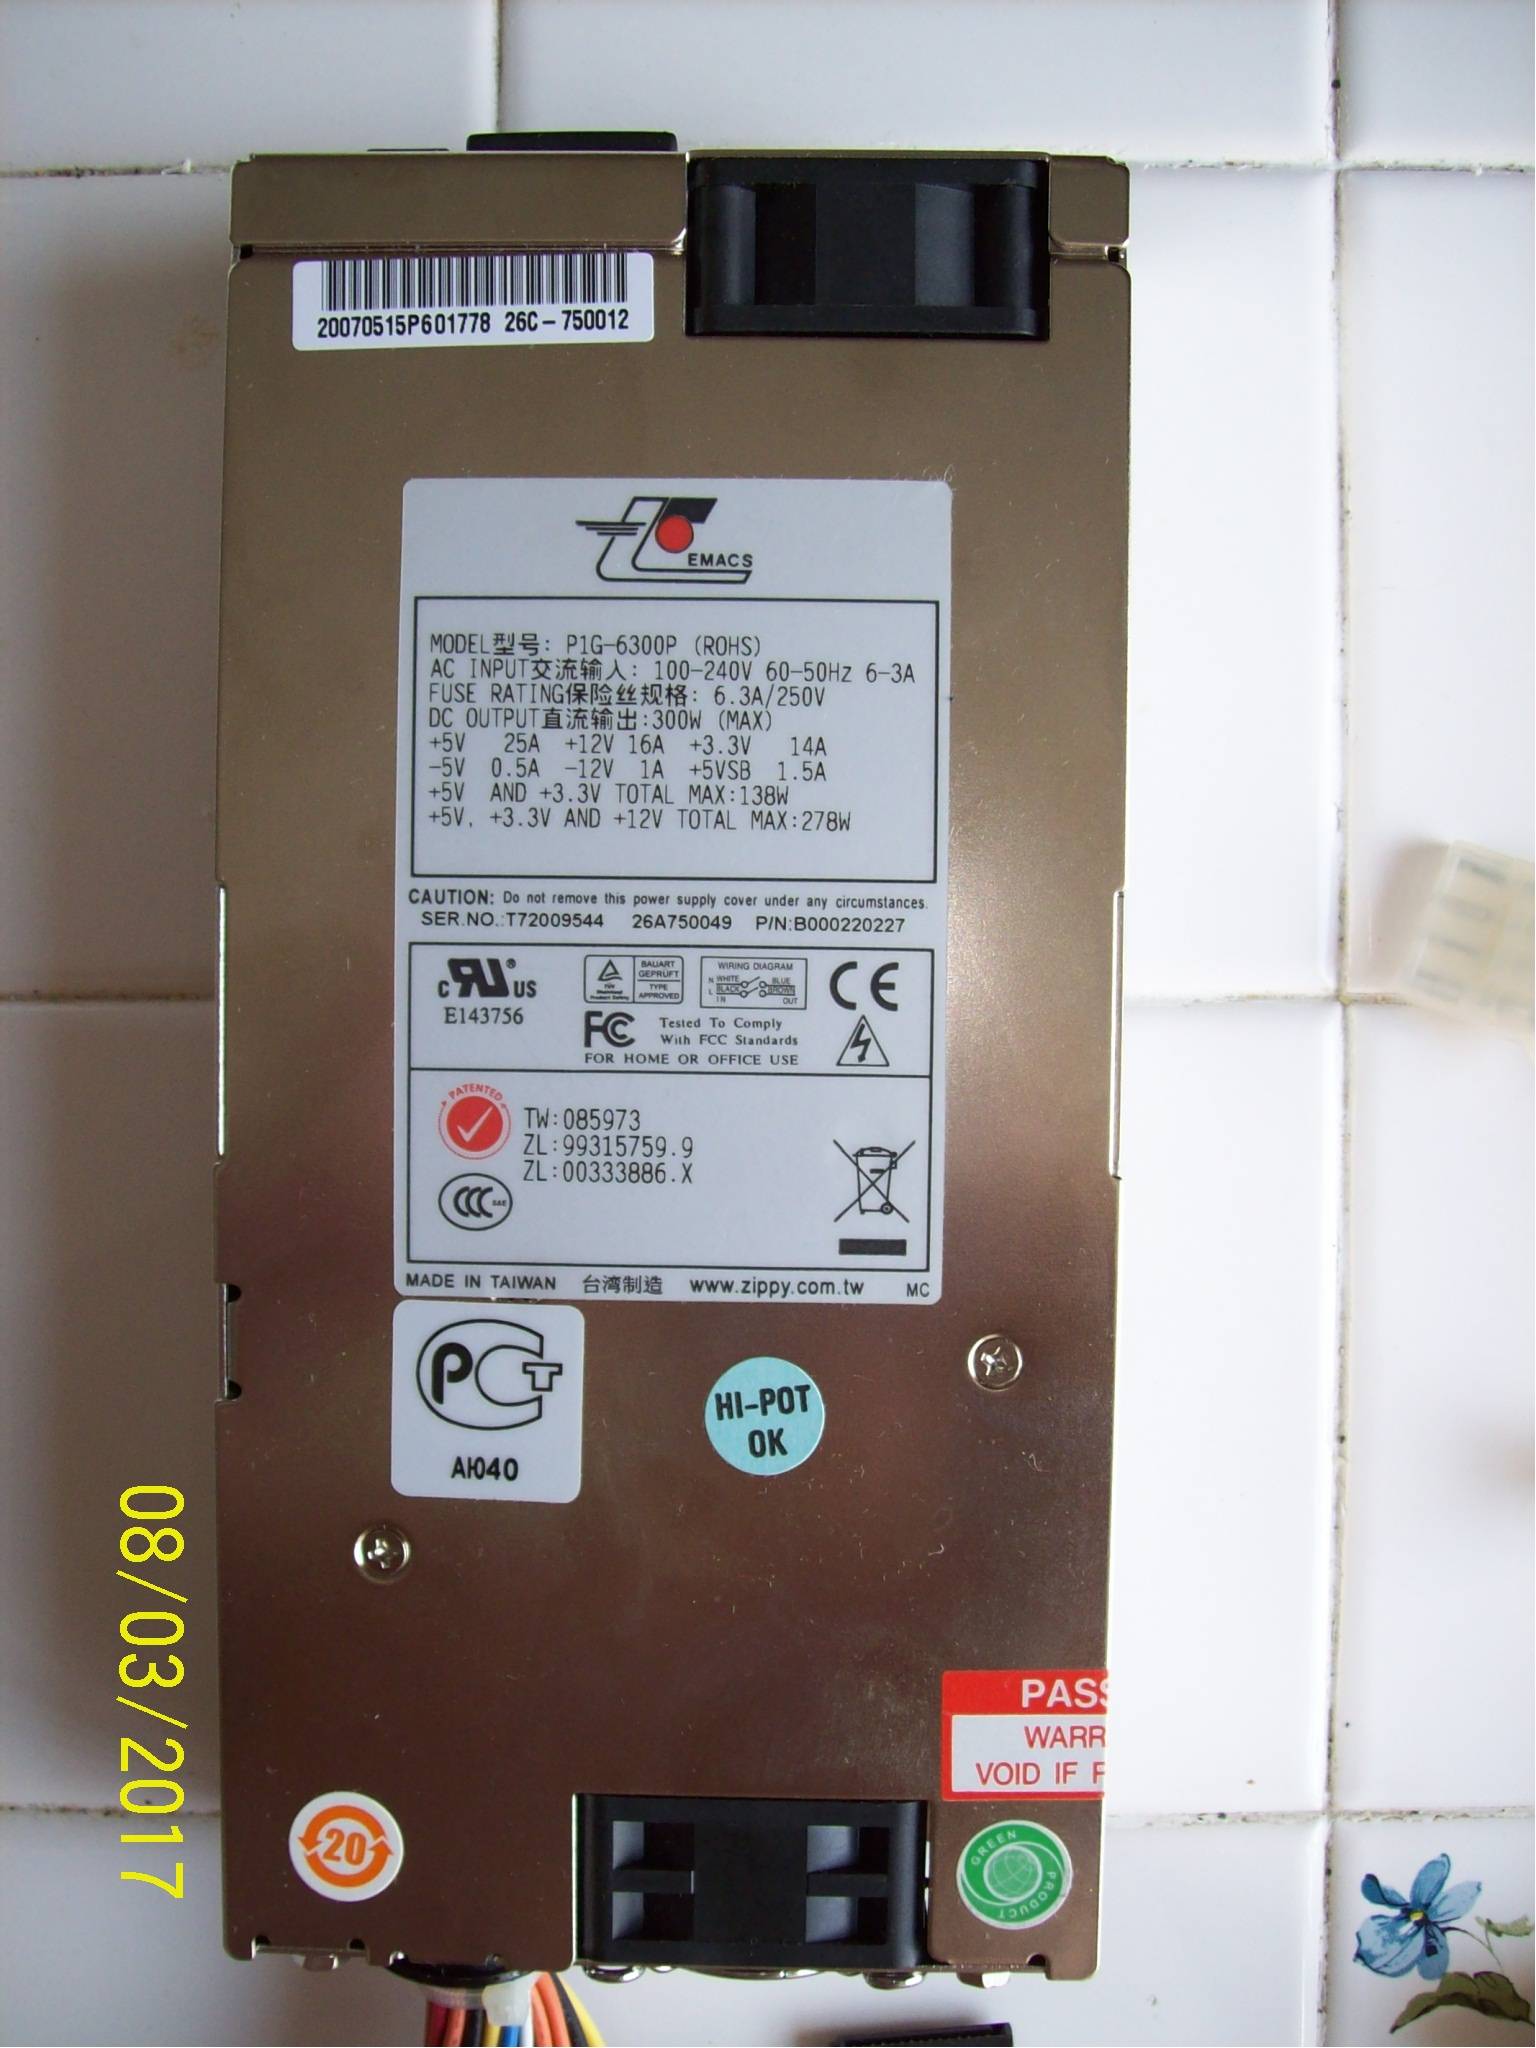 Juniper WX-20 Power Supply P1G-6300P 300W 6.3A/250V 100-240V 60-50Hz 6-3A